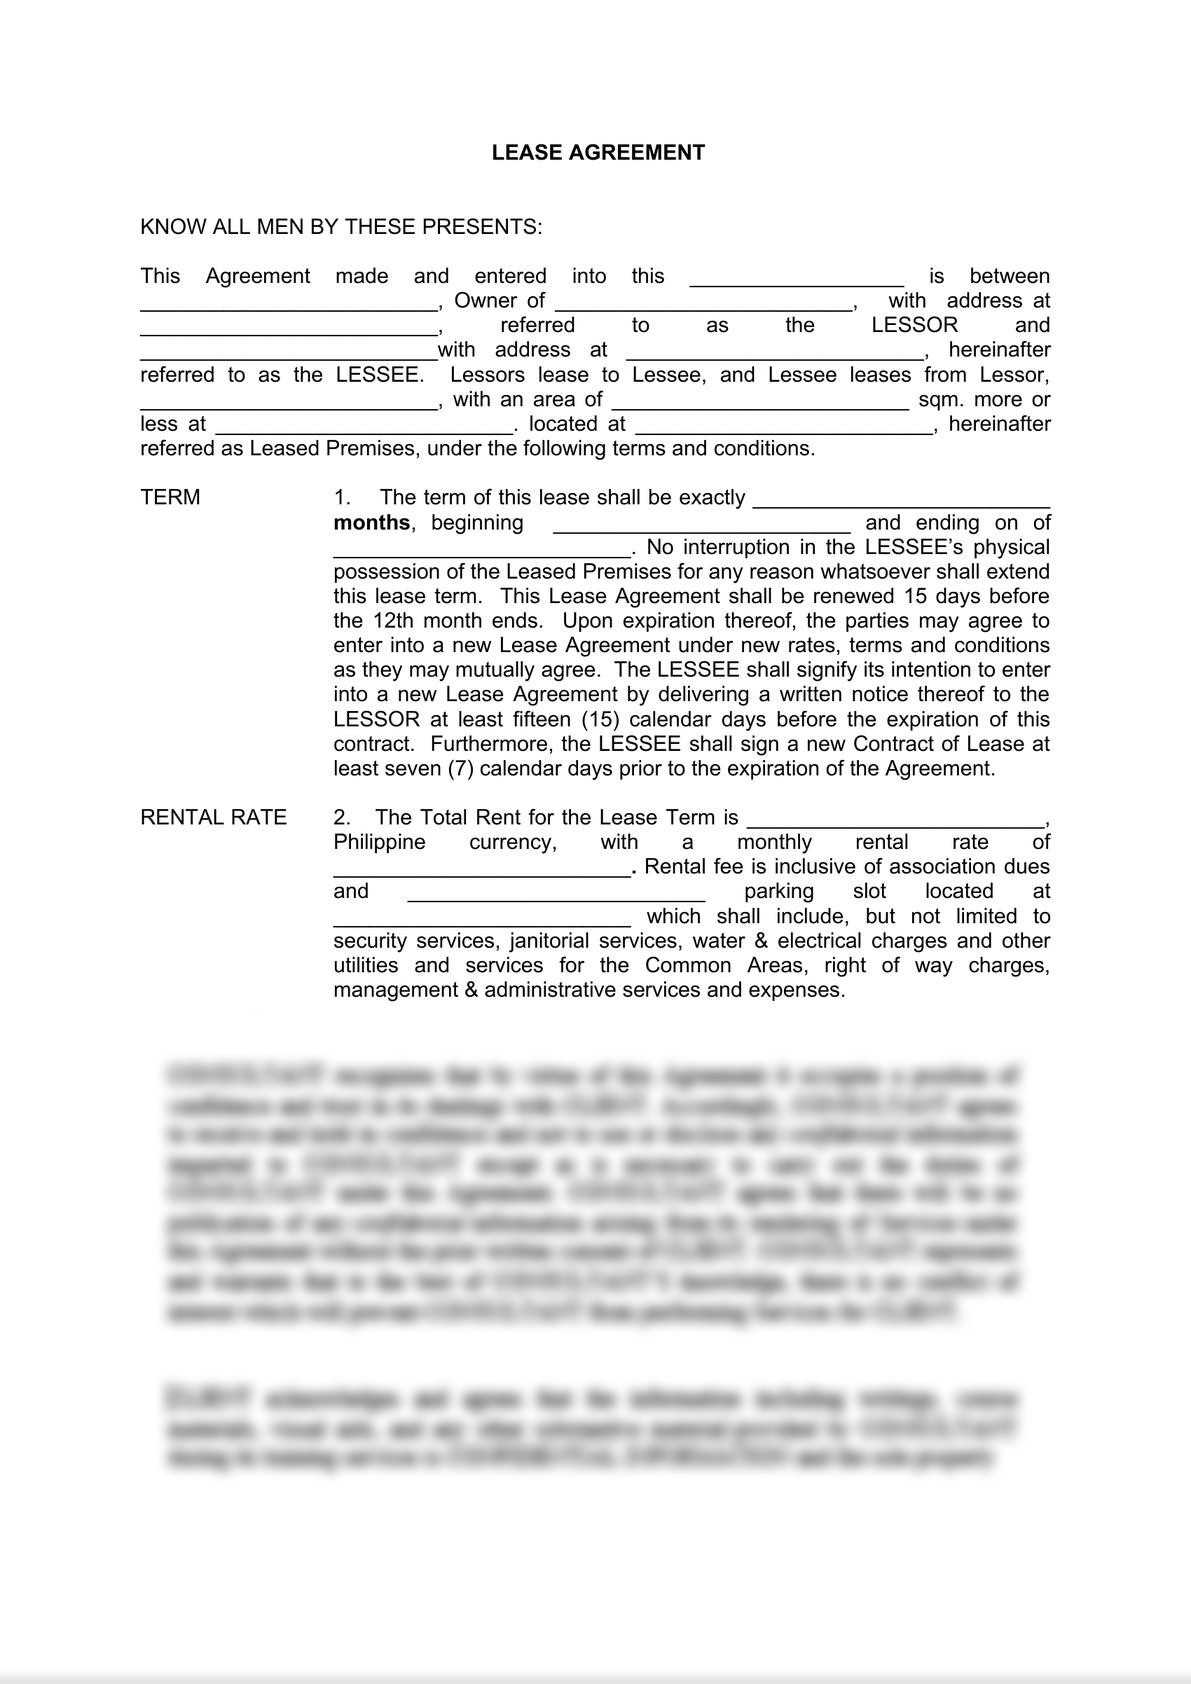 Contract of Lease - Condominium Unit-1